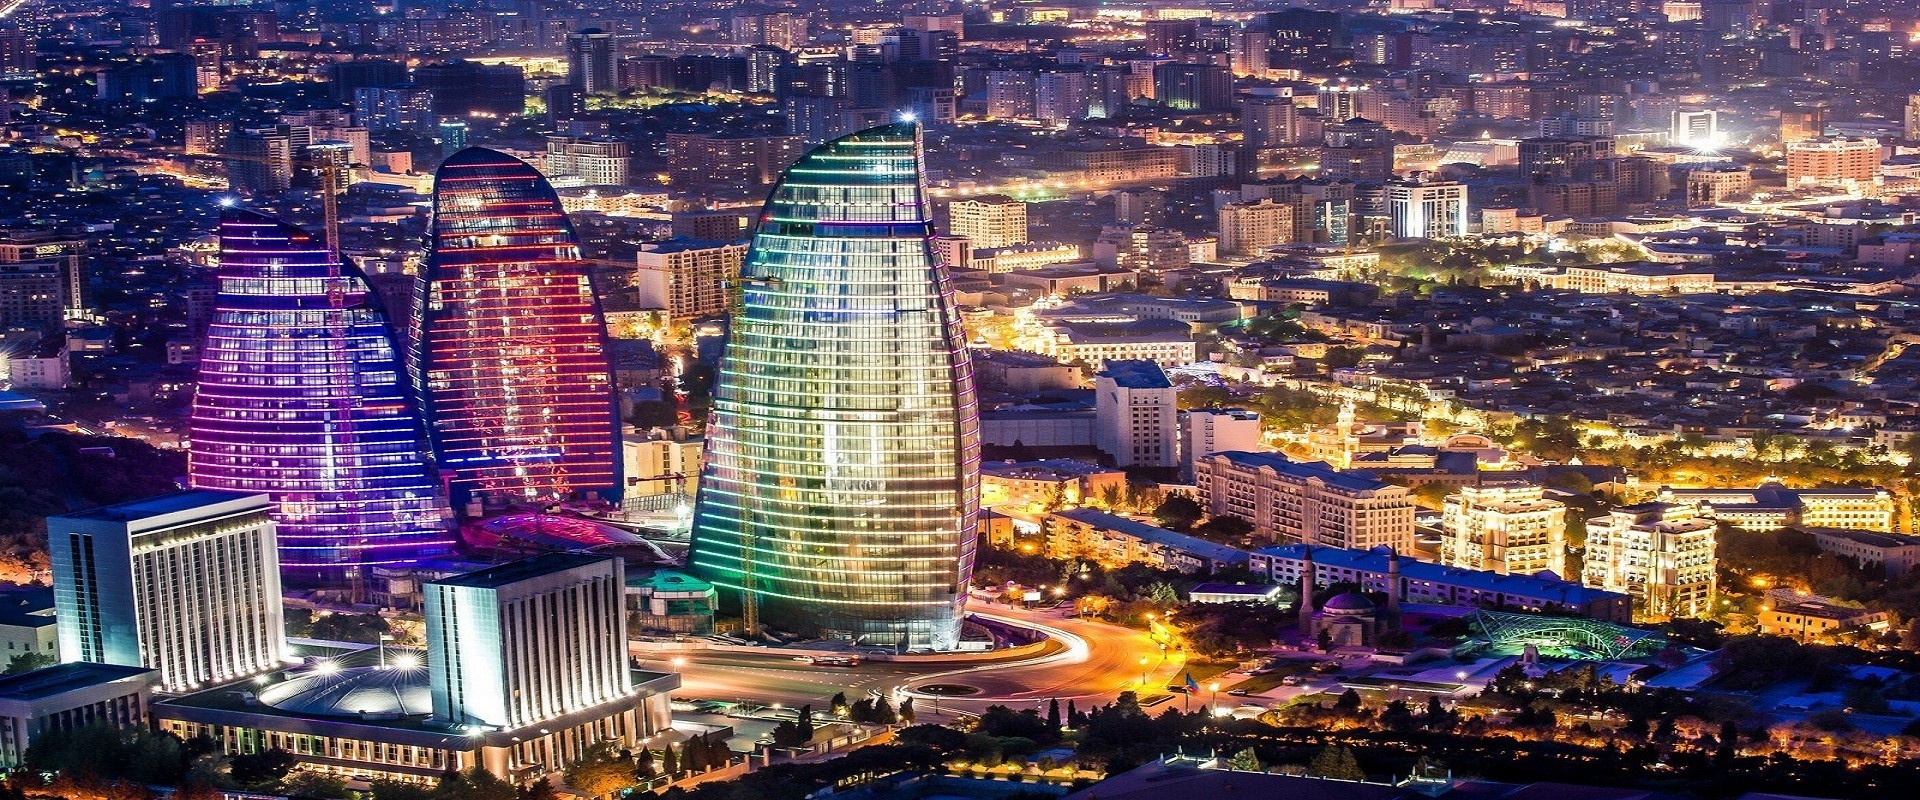 Баку 5 дней | Апшеронские мотивы